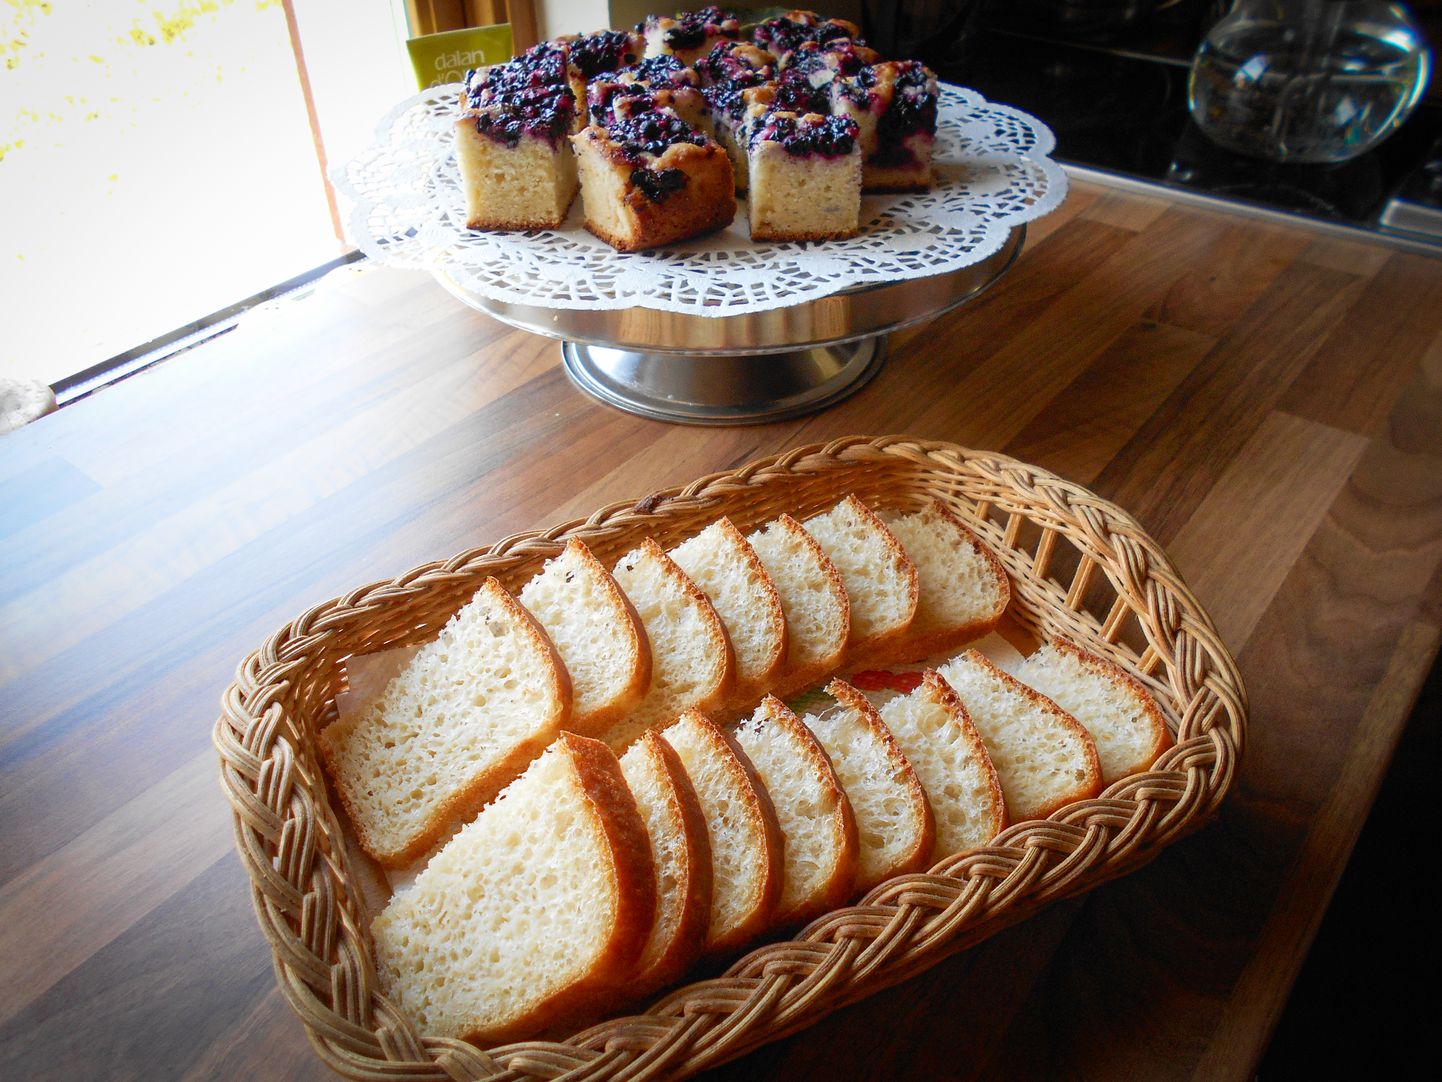 Кореневич порекомендовала есть меньше простых углеводов, которые содержатся в сладком, хлебе и выпечке. Фото иллюстративное.